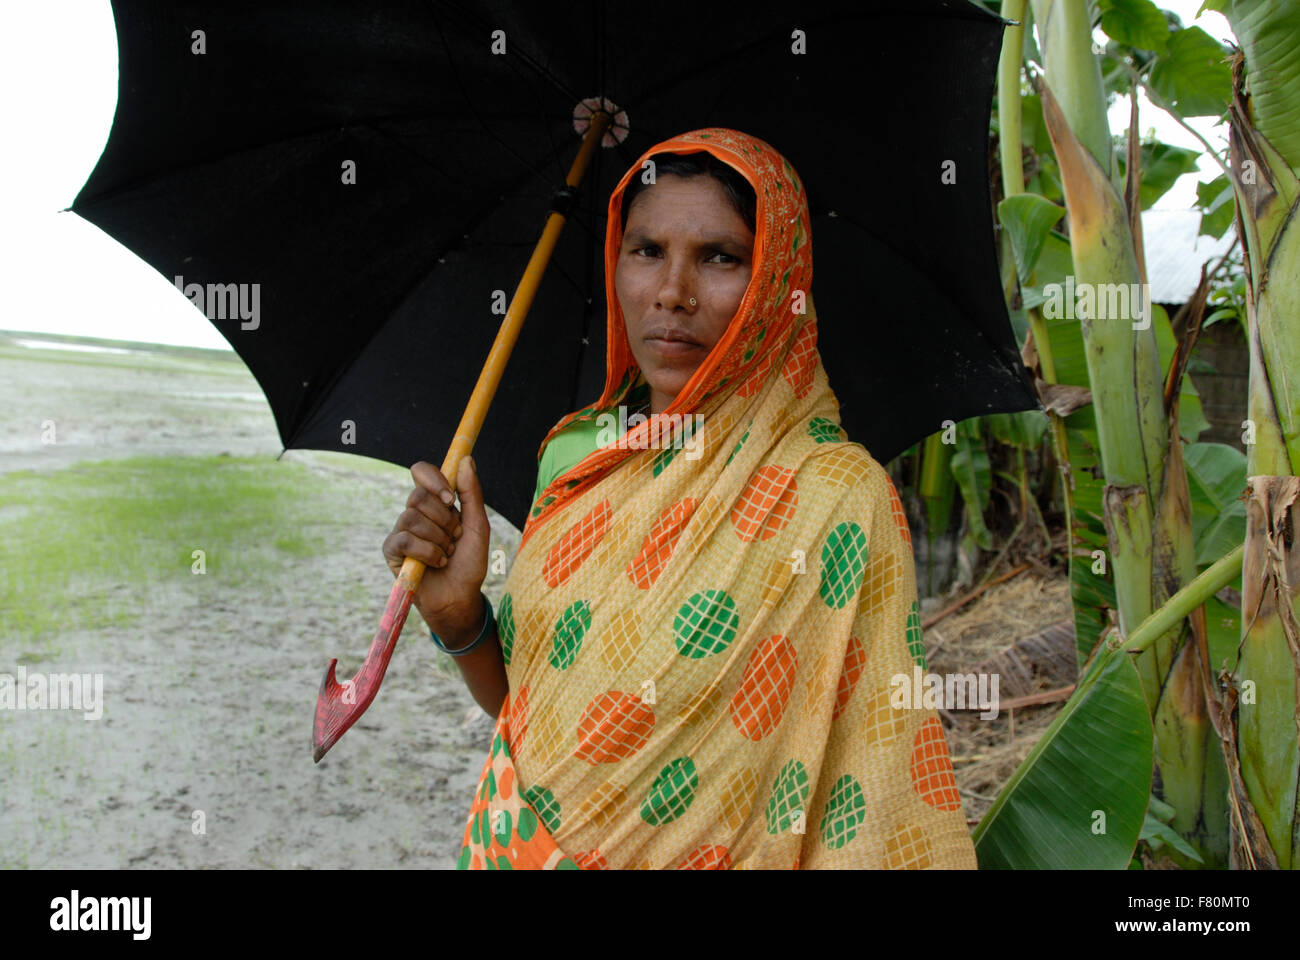 Besuch bei Flut betroffenen Norden Bangladesch. Dorf-Frau mit Regenschirm. Karigam Bezirk, rund 400 km von Dhaka Stockfoto